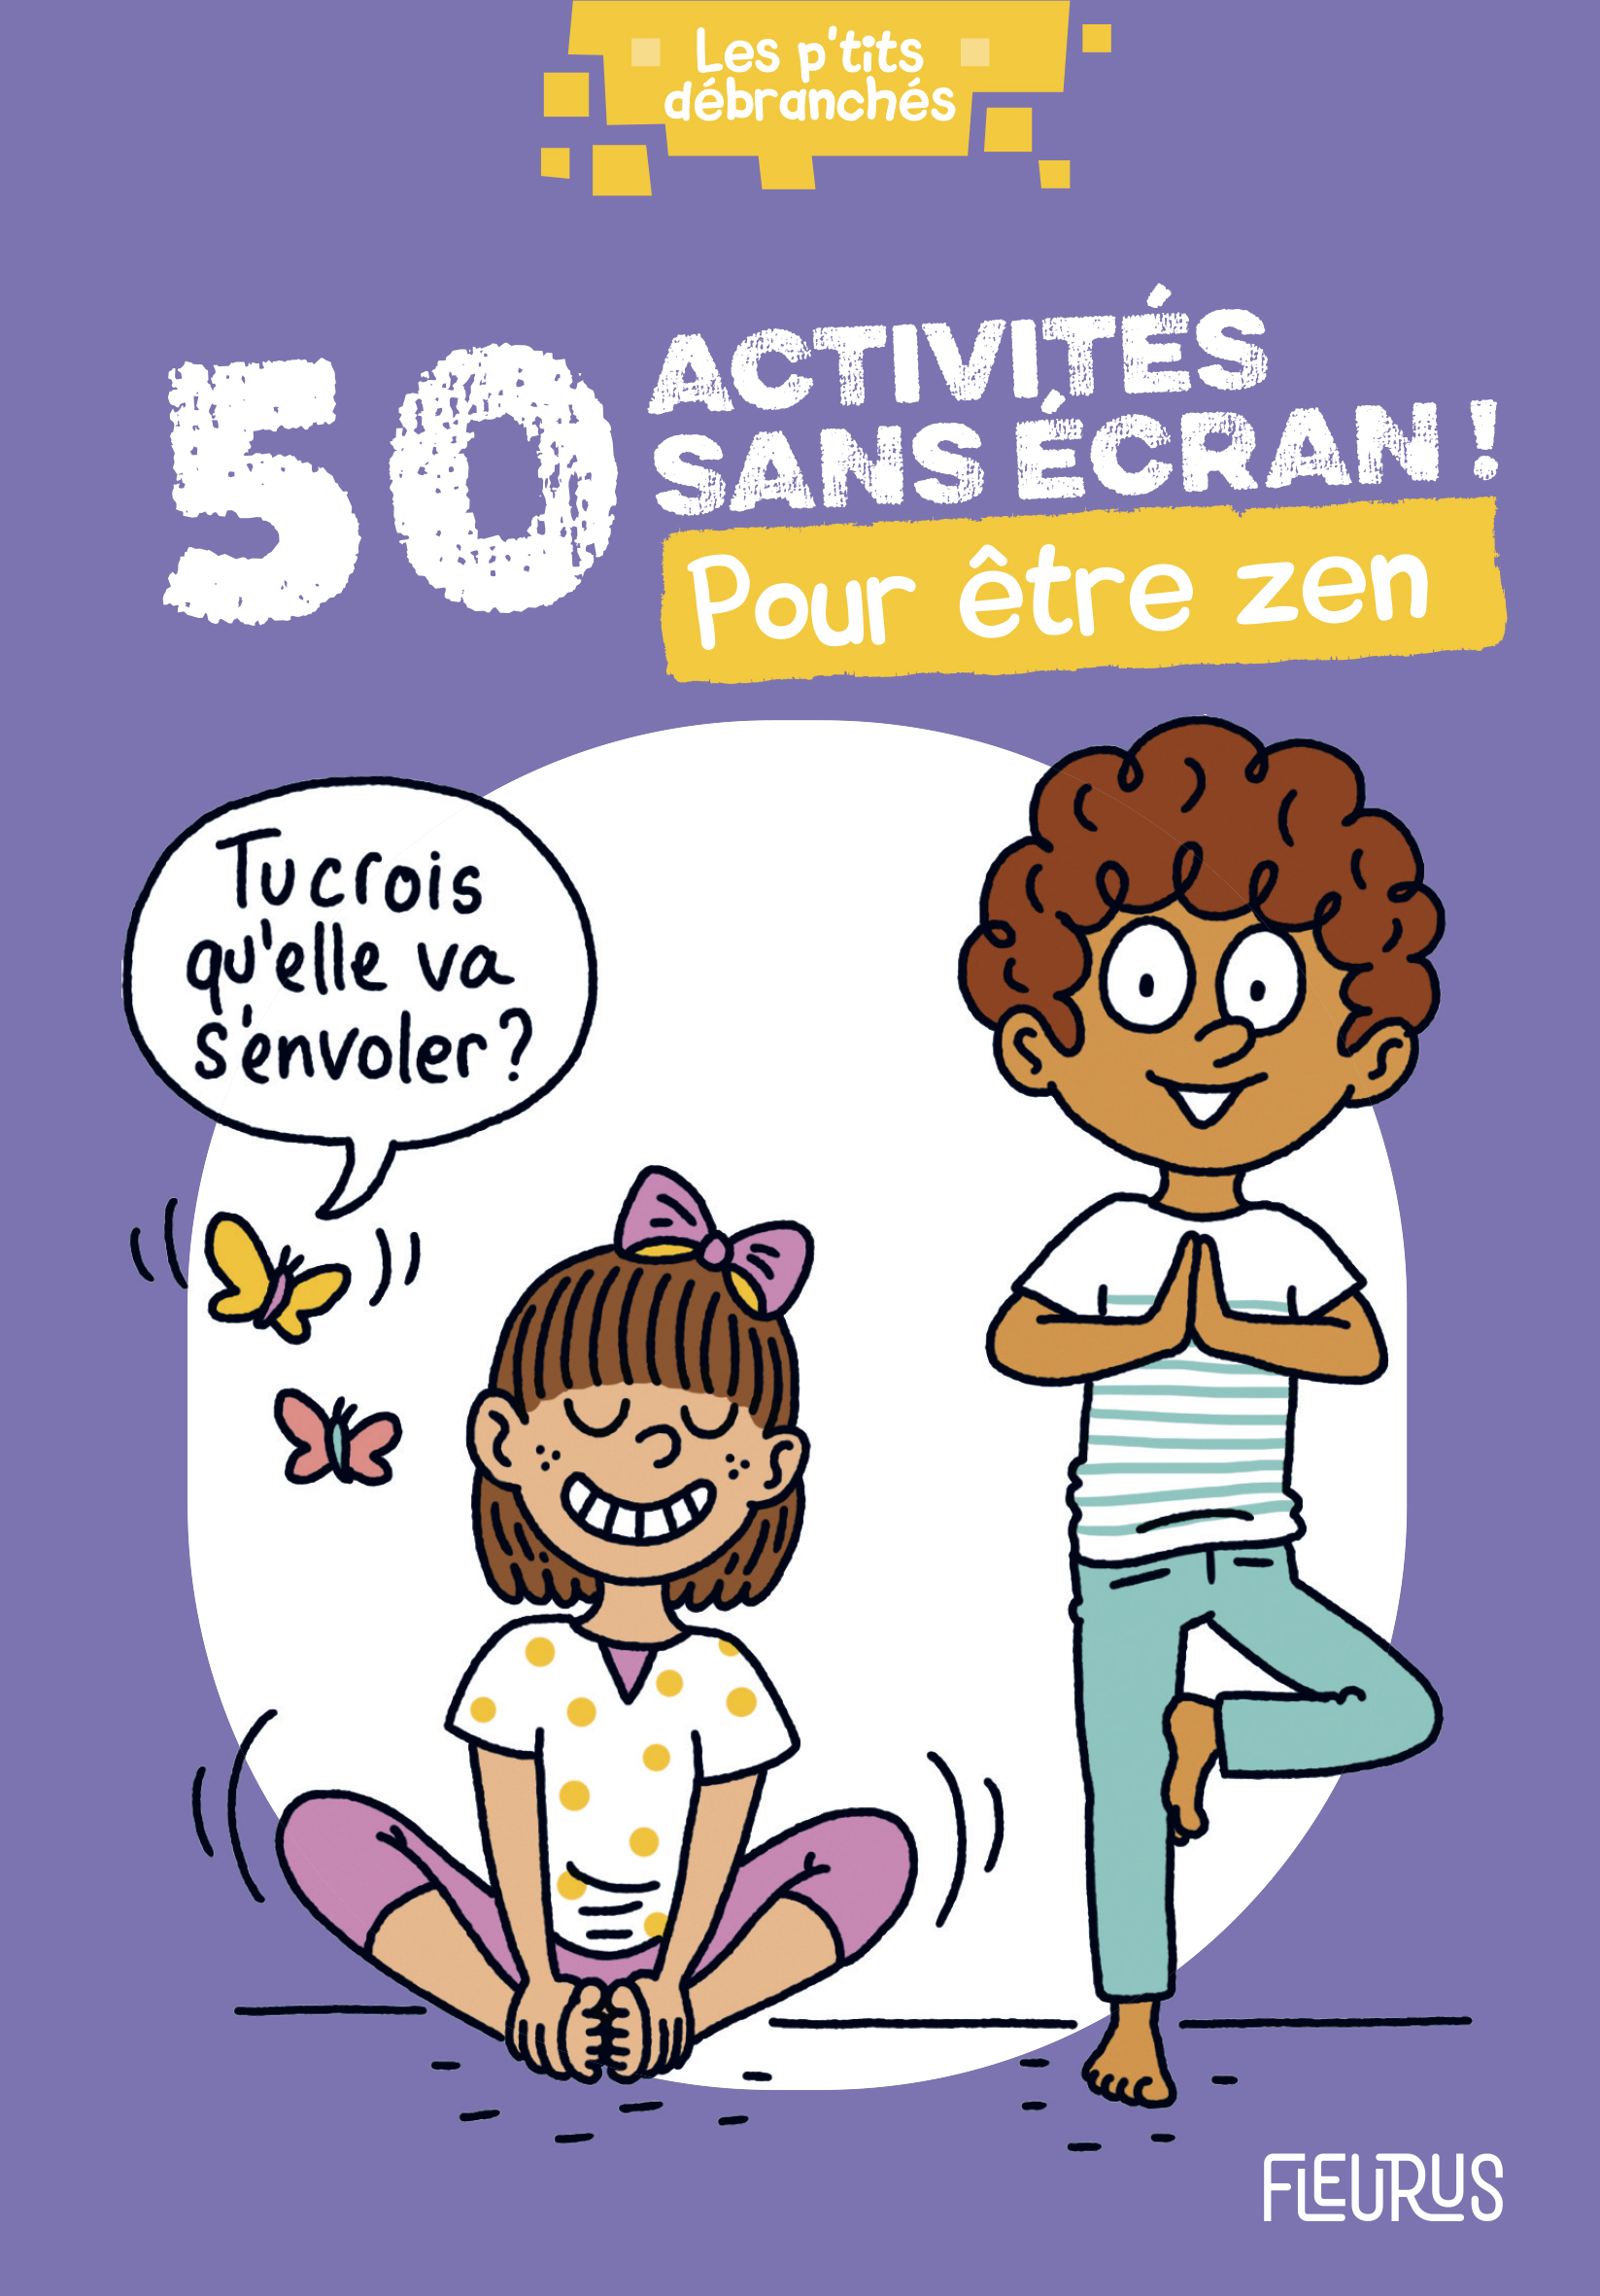 50 ACTIVITÉS SANS ÉCRAN ! POUR ÊTRE ZEN, collectif, Fleurus éditions